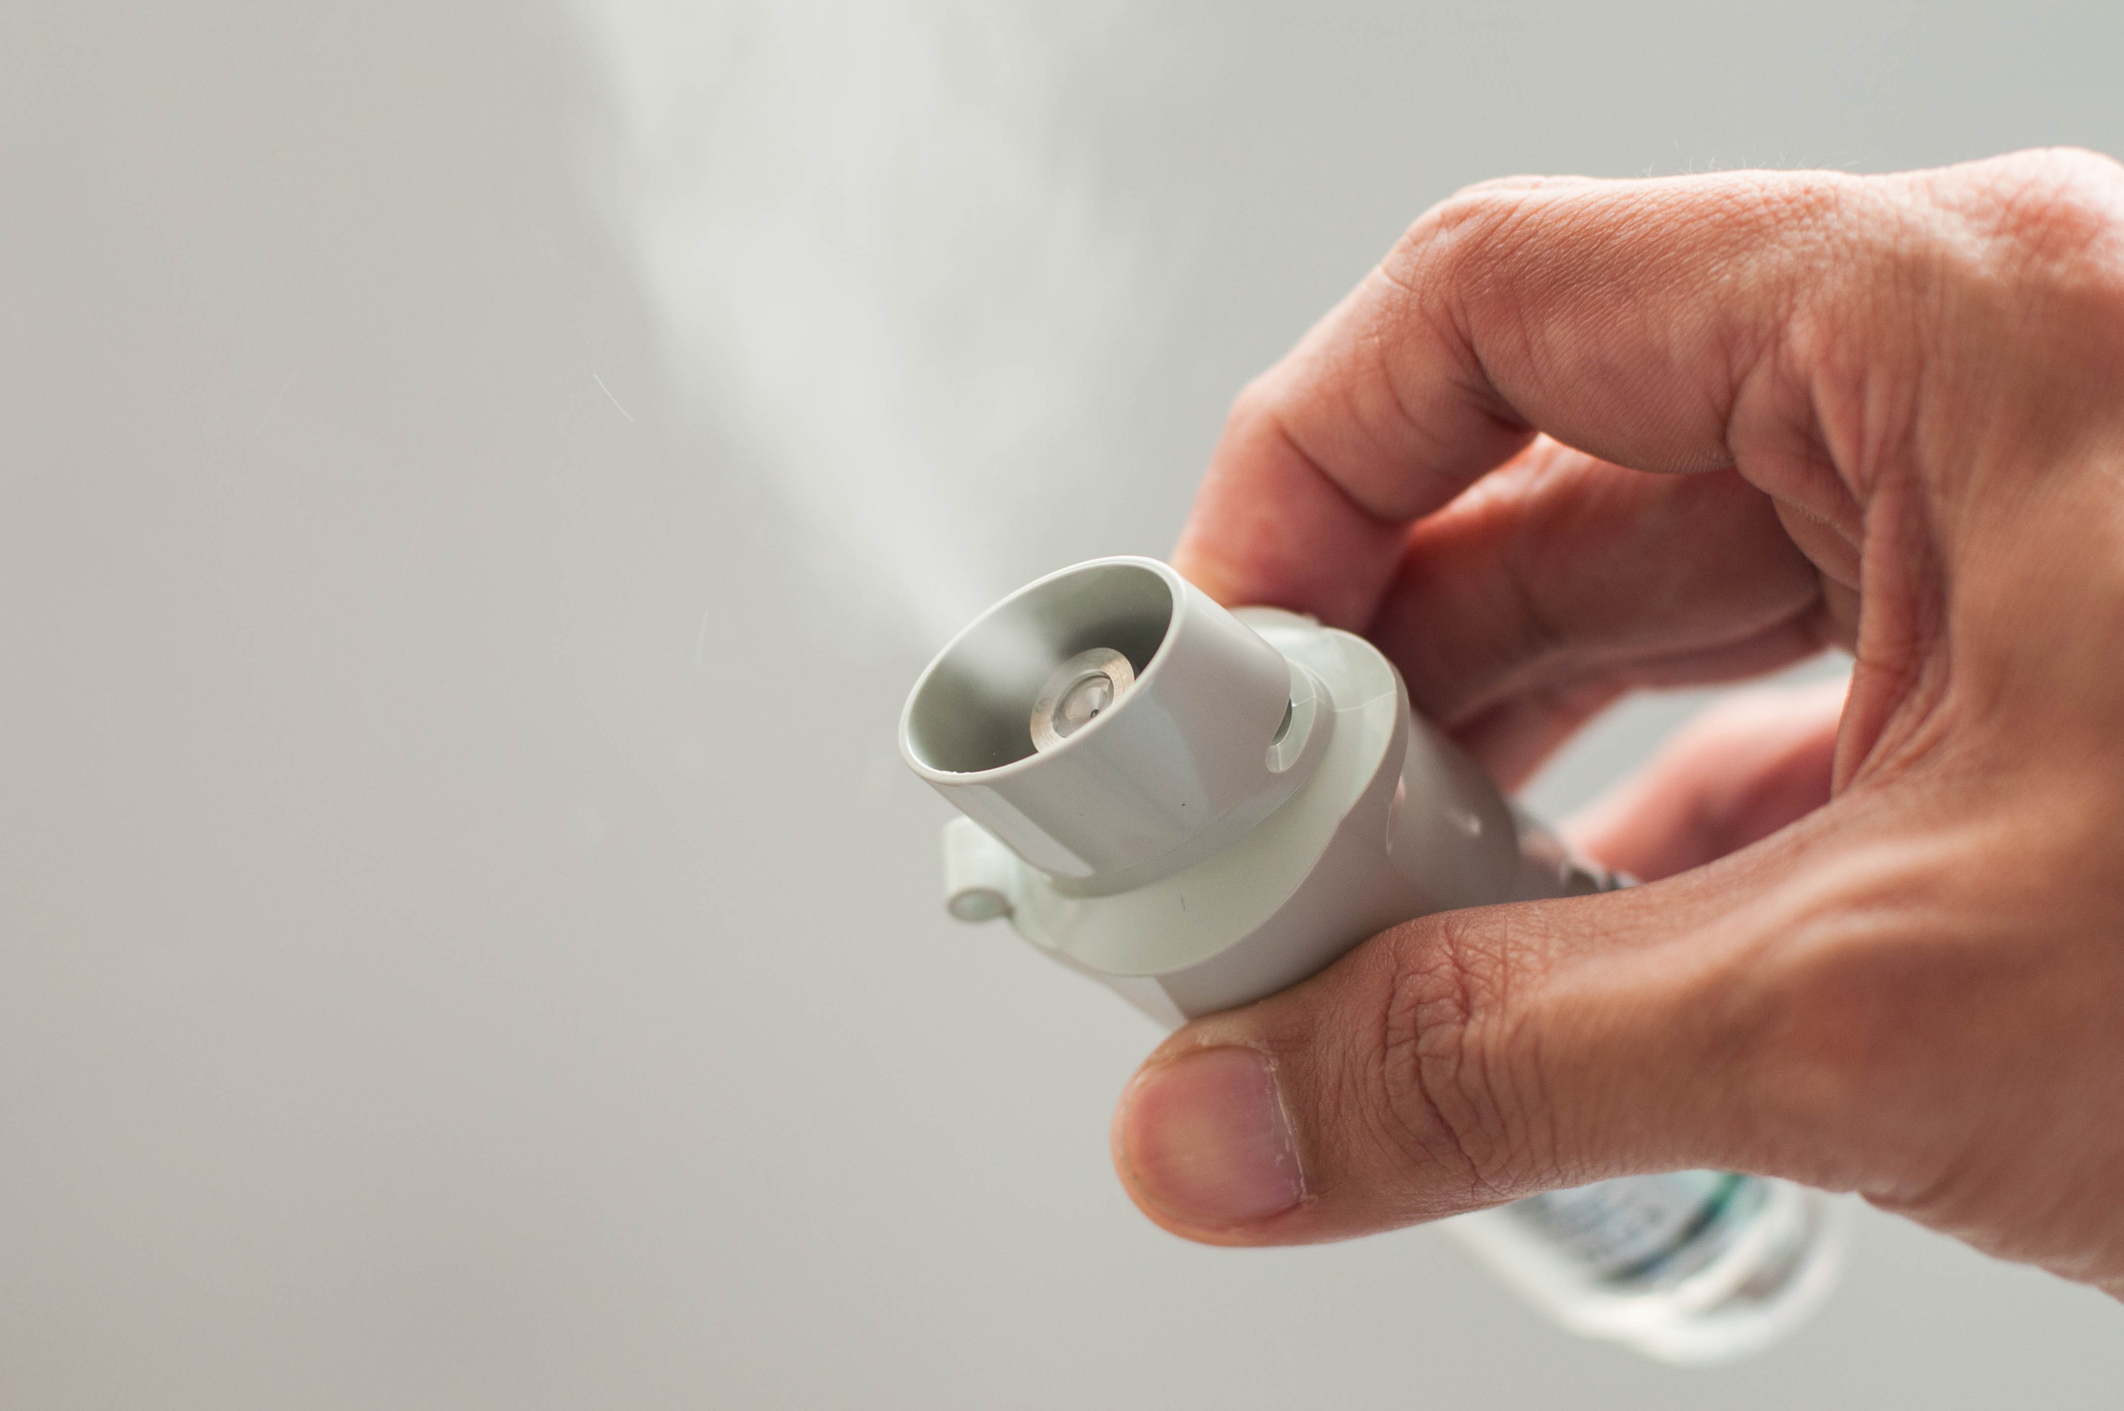 A close-up view of an inhaler